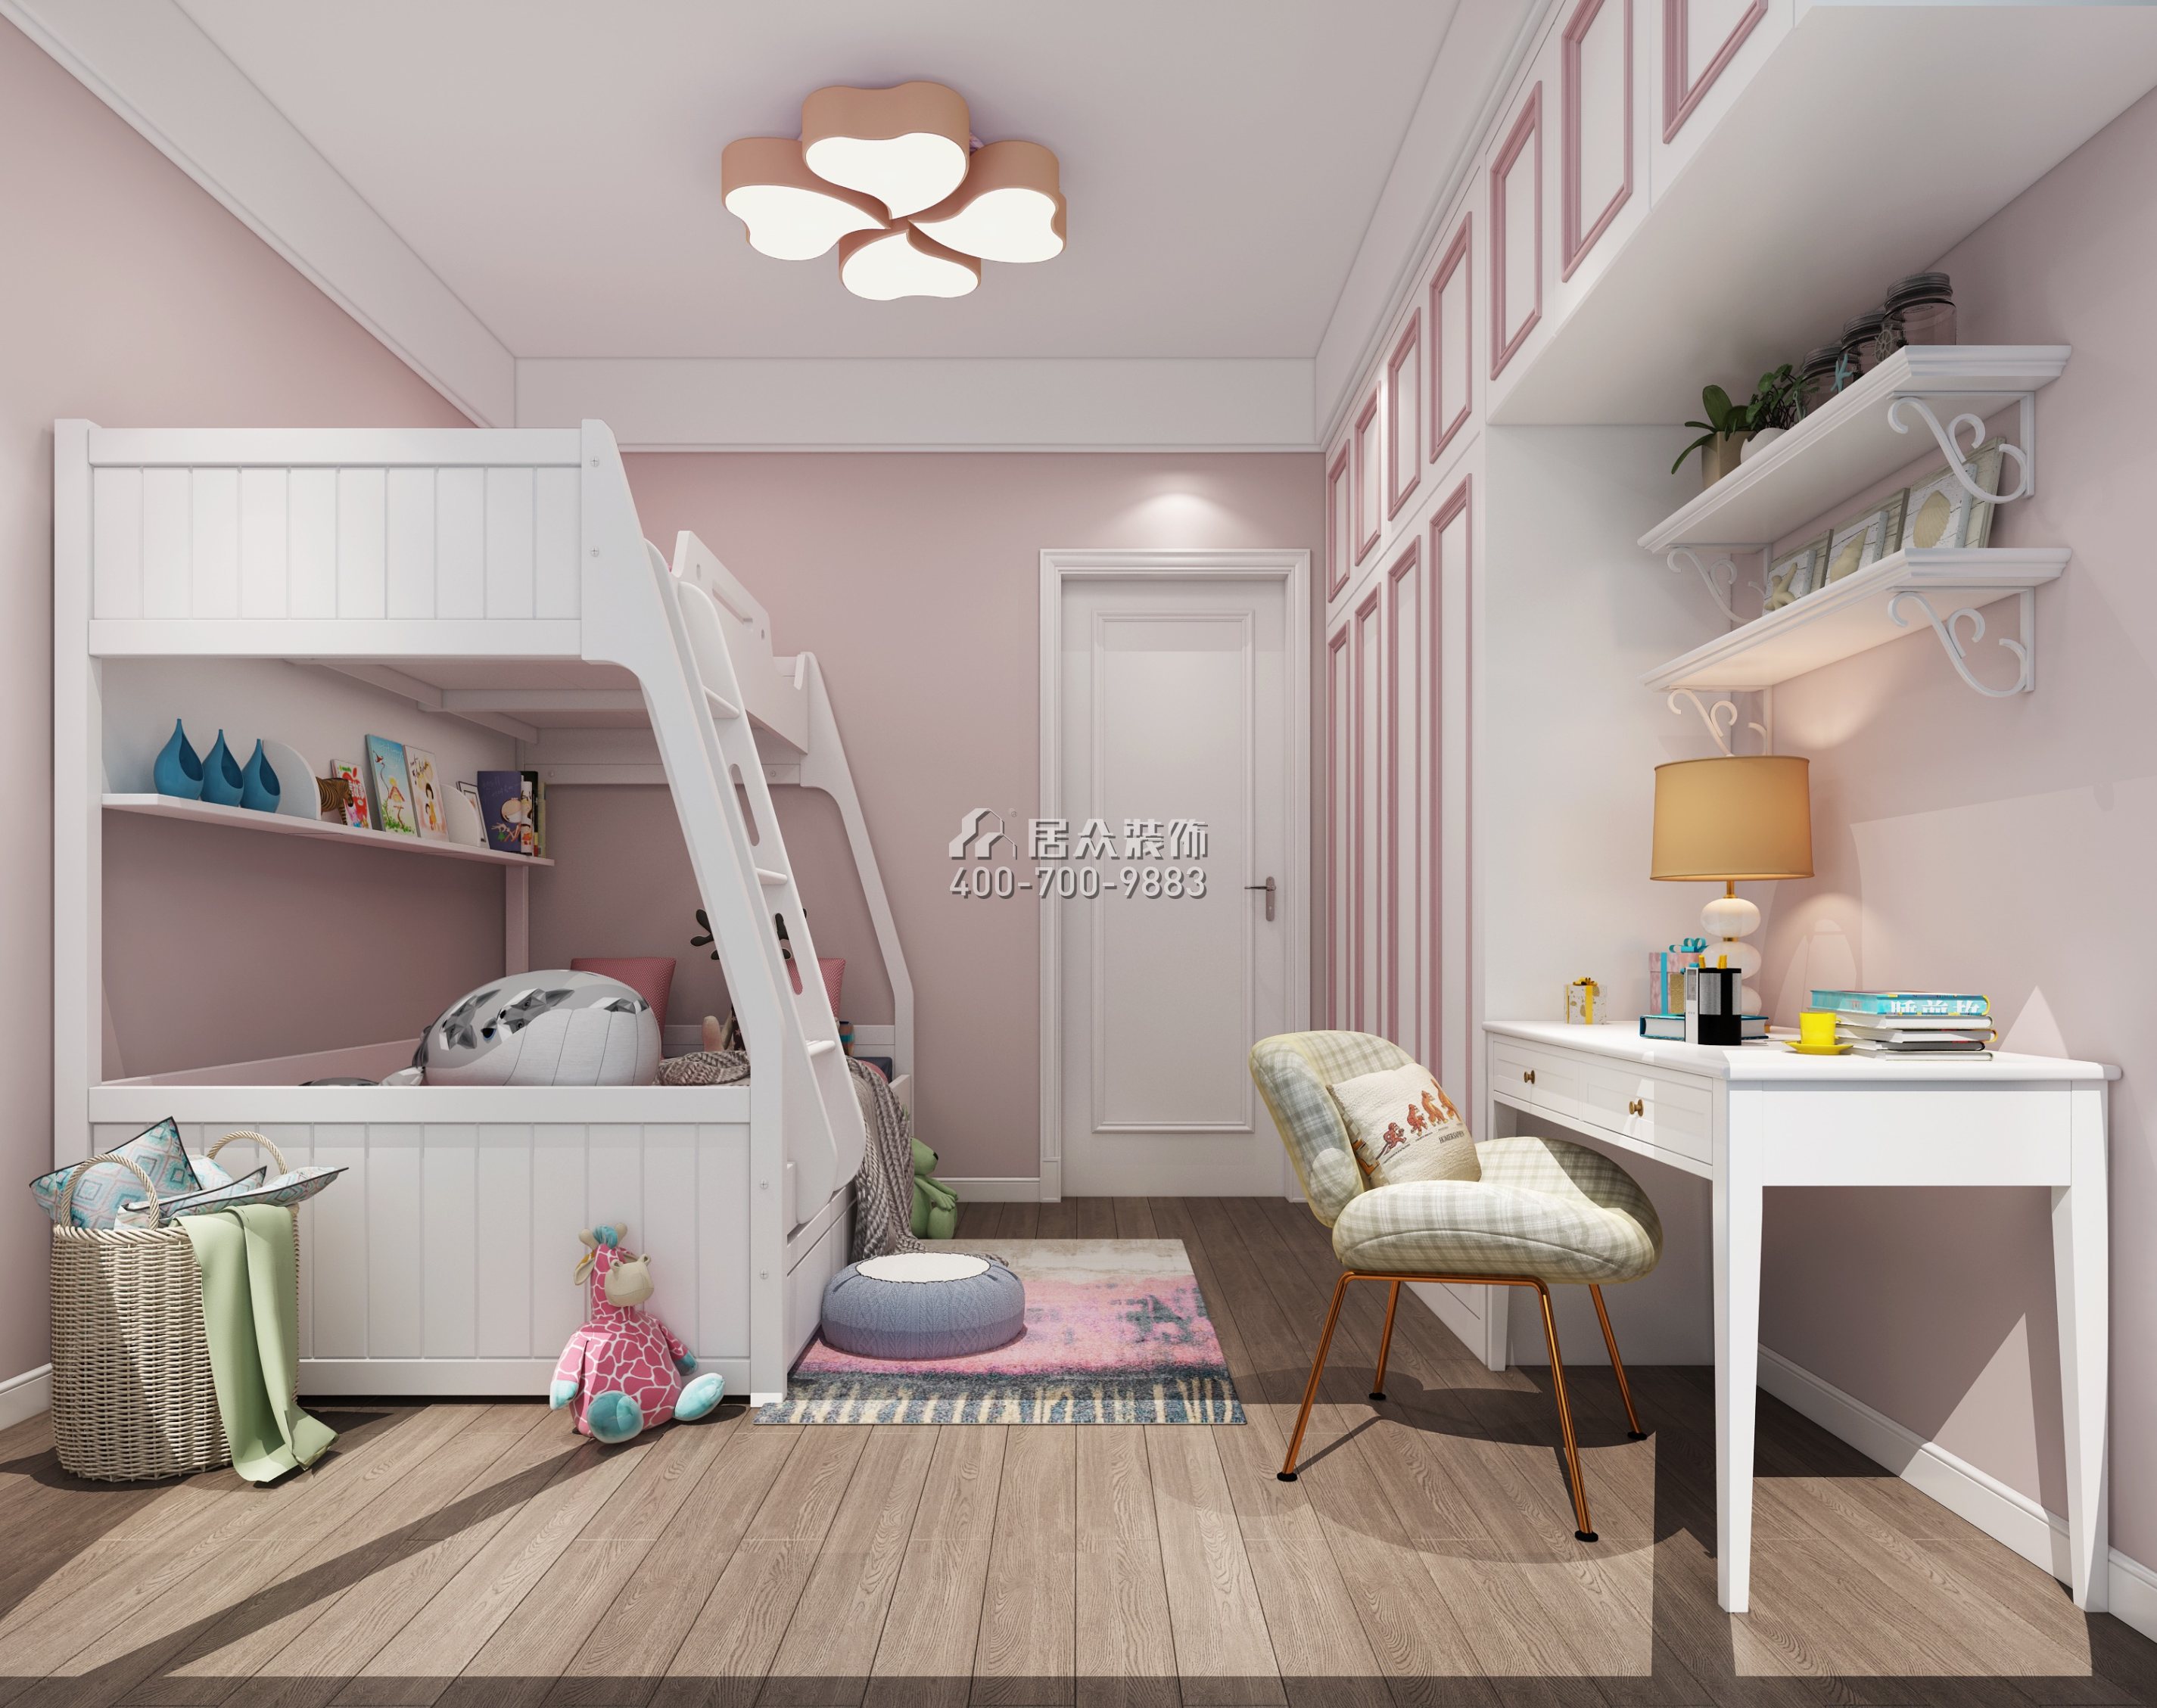 睿智华庭150平方米现代简约风格平层户型儿童房装修效果图